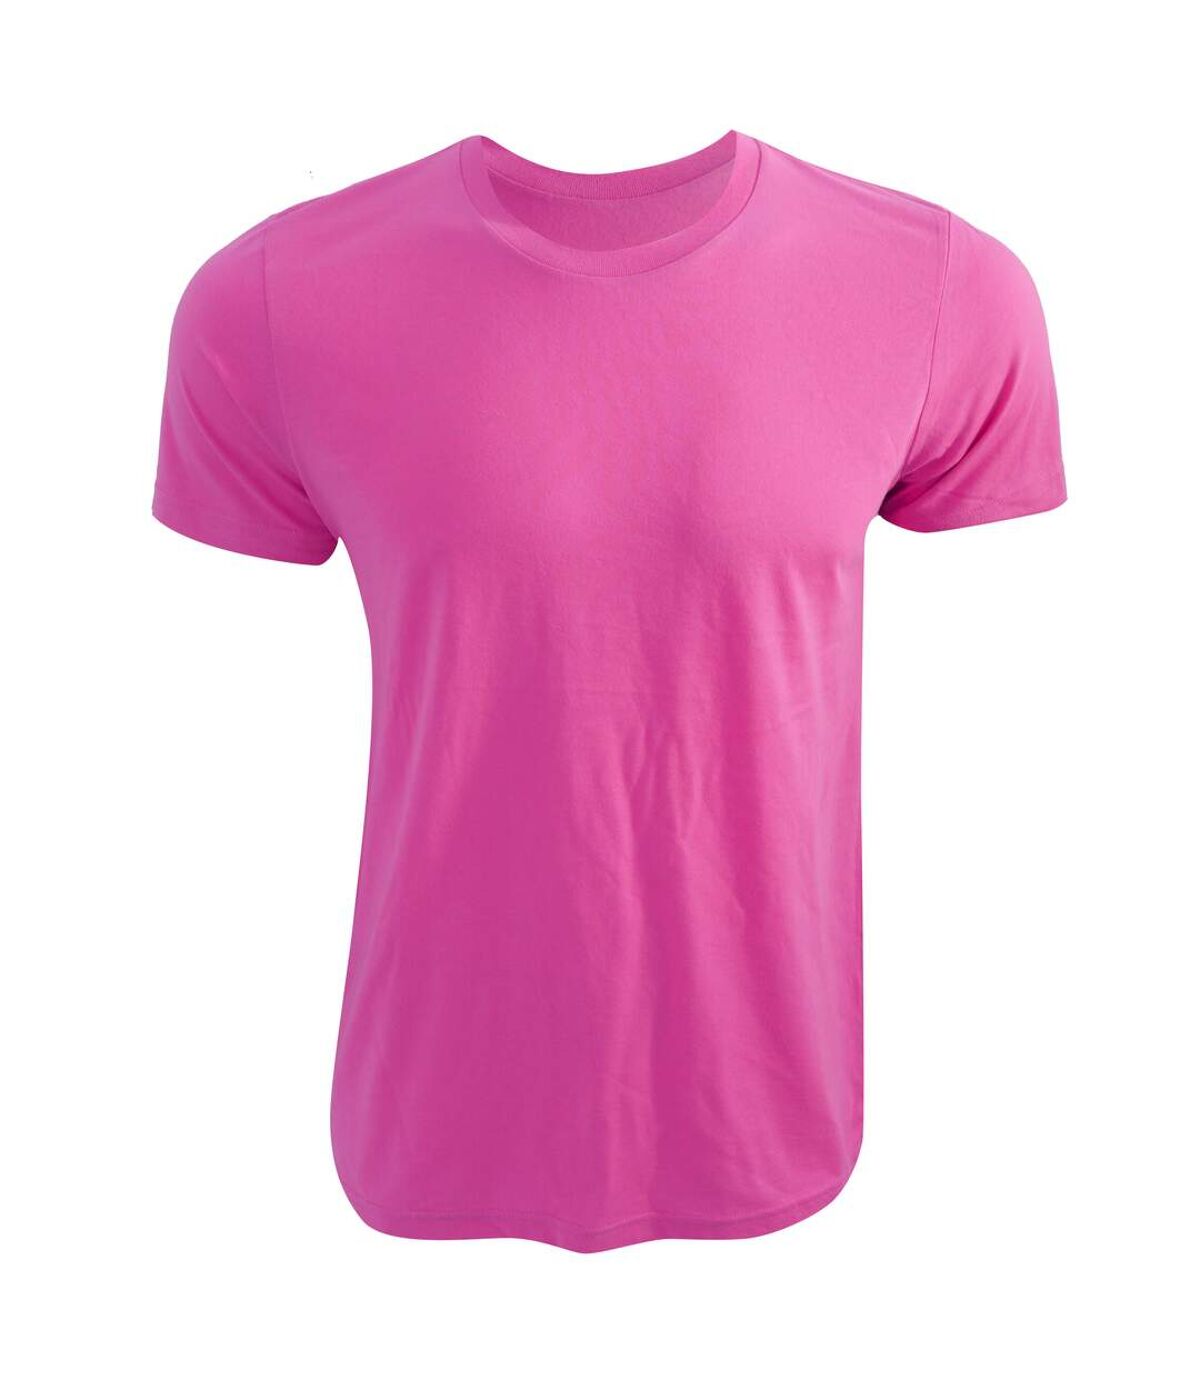 Canvas - T-shirt à manches courtes - Adulte unisexe (Rose fluo) - UTBC3167